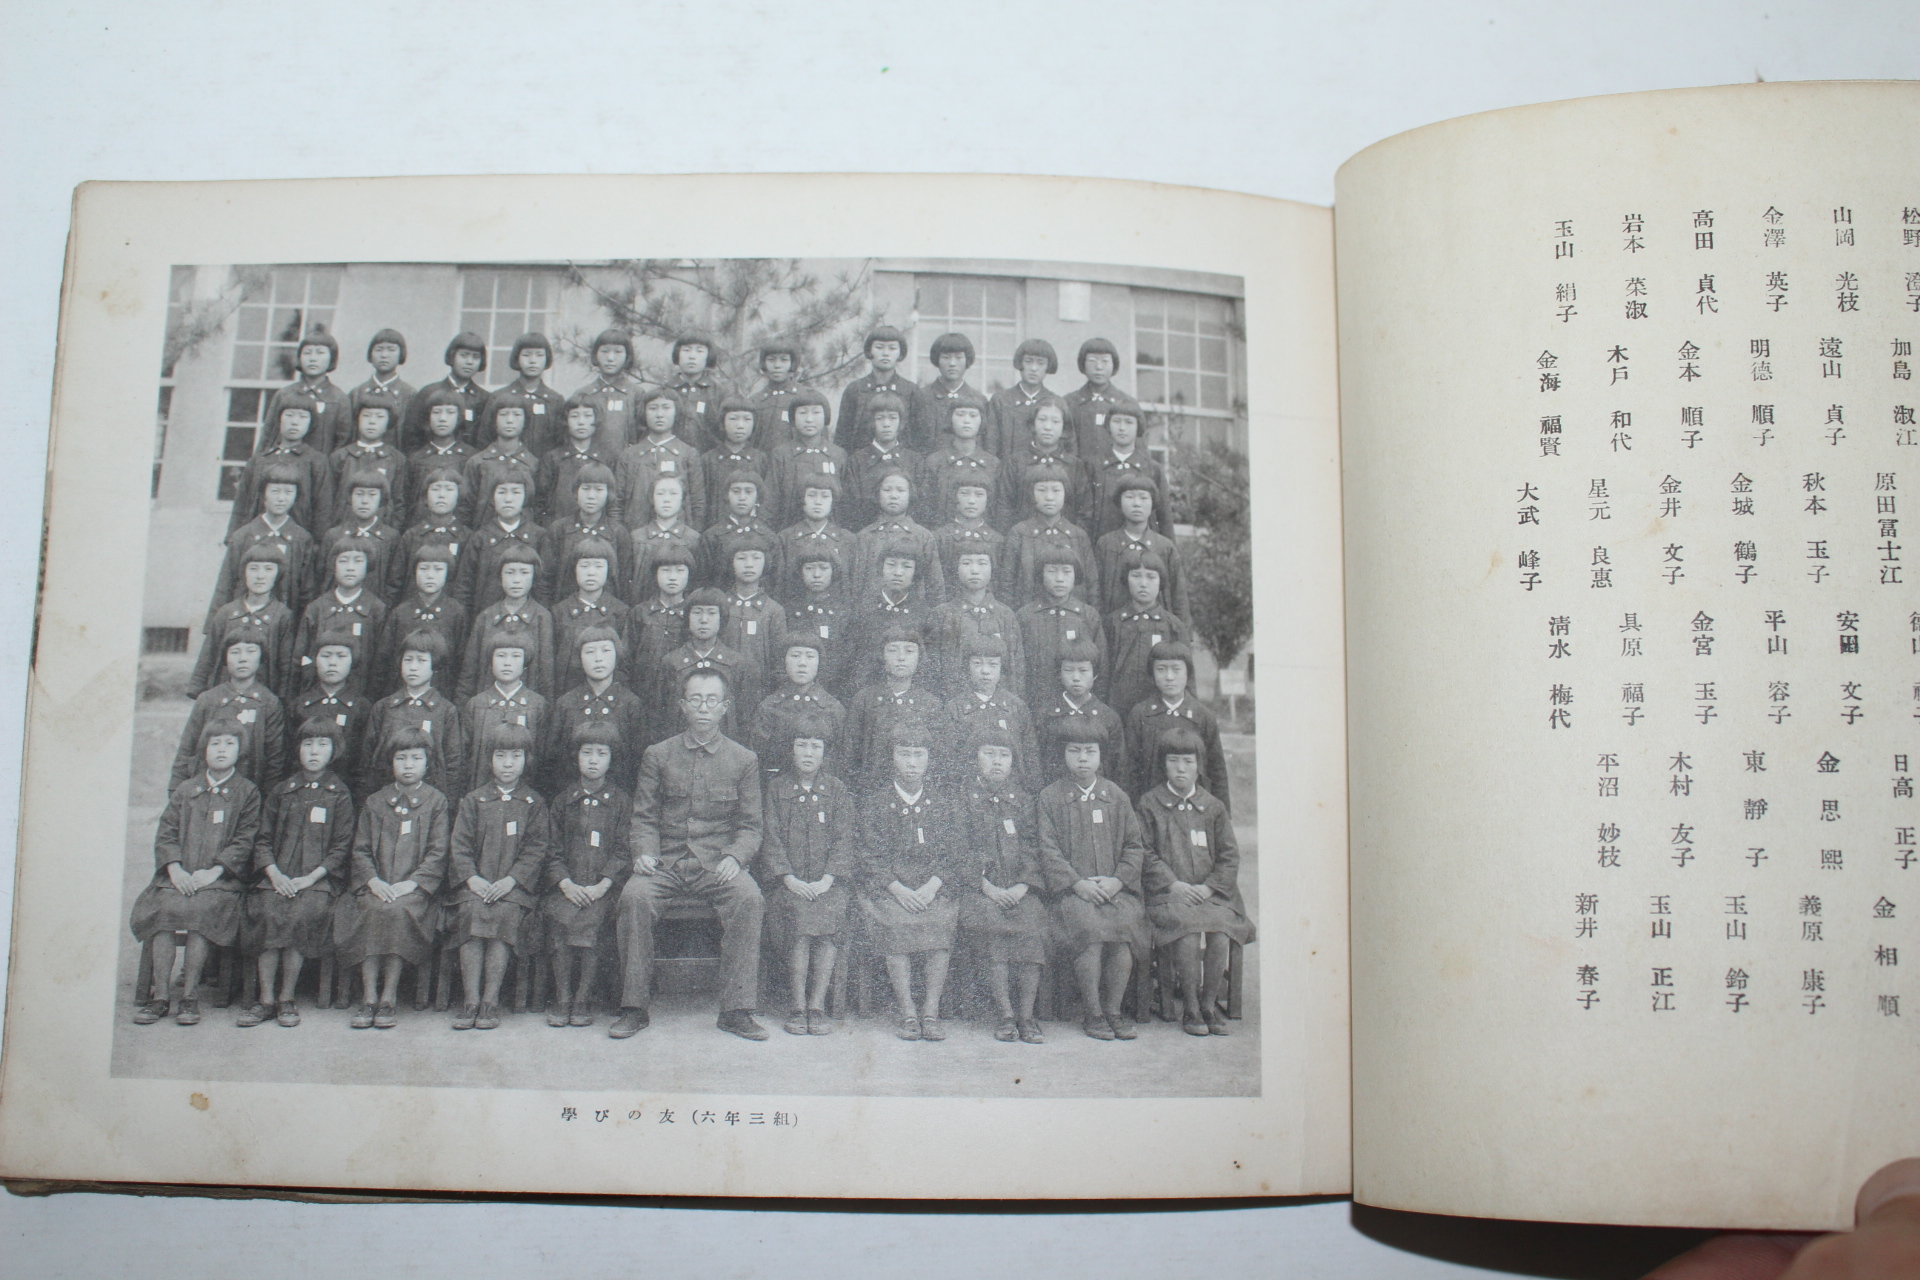 1943년 부산초량공립국민학교 제1회 수료기념사진첩